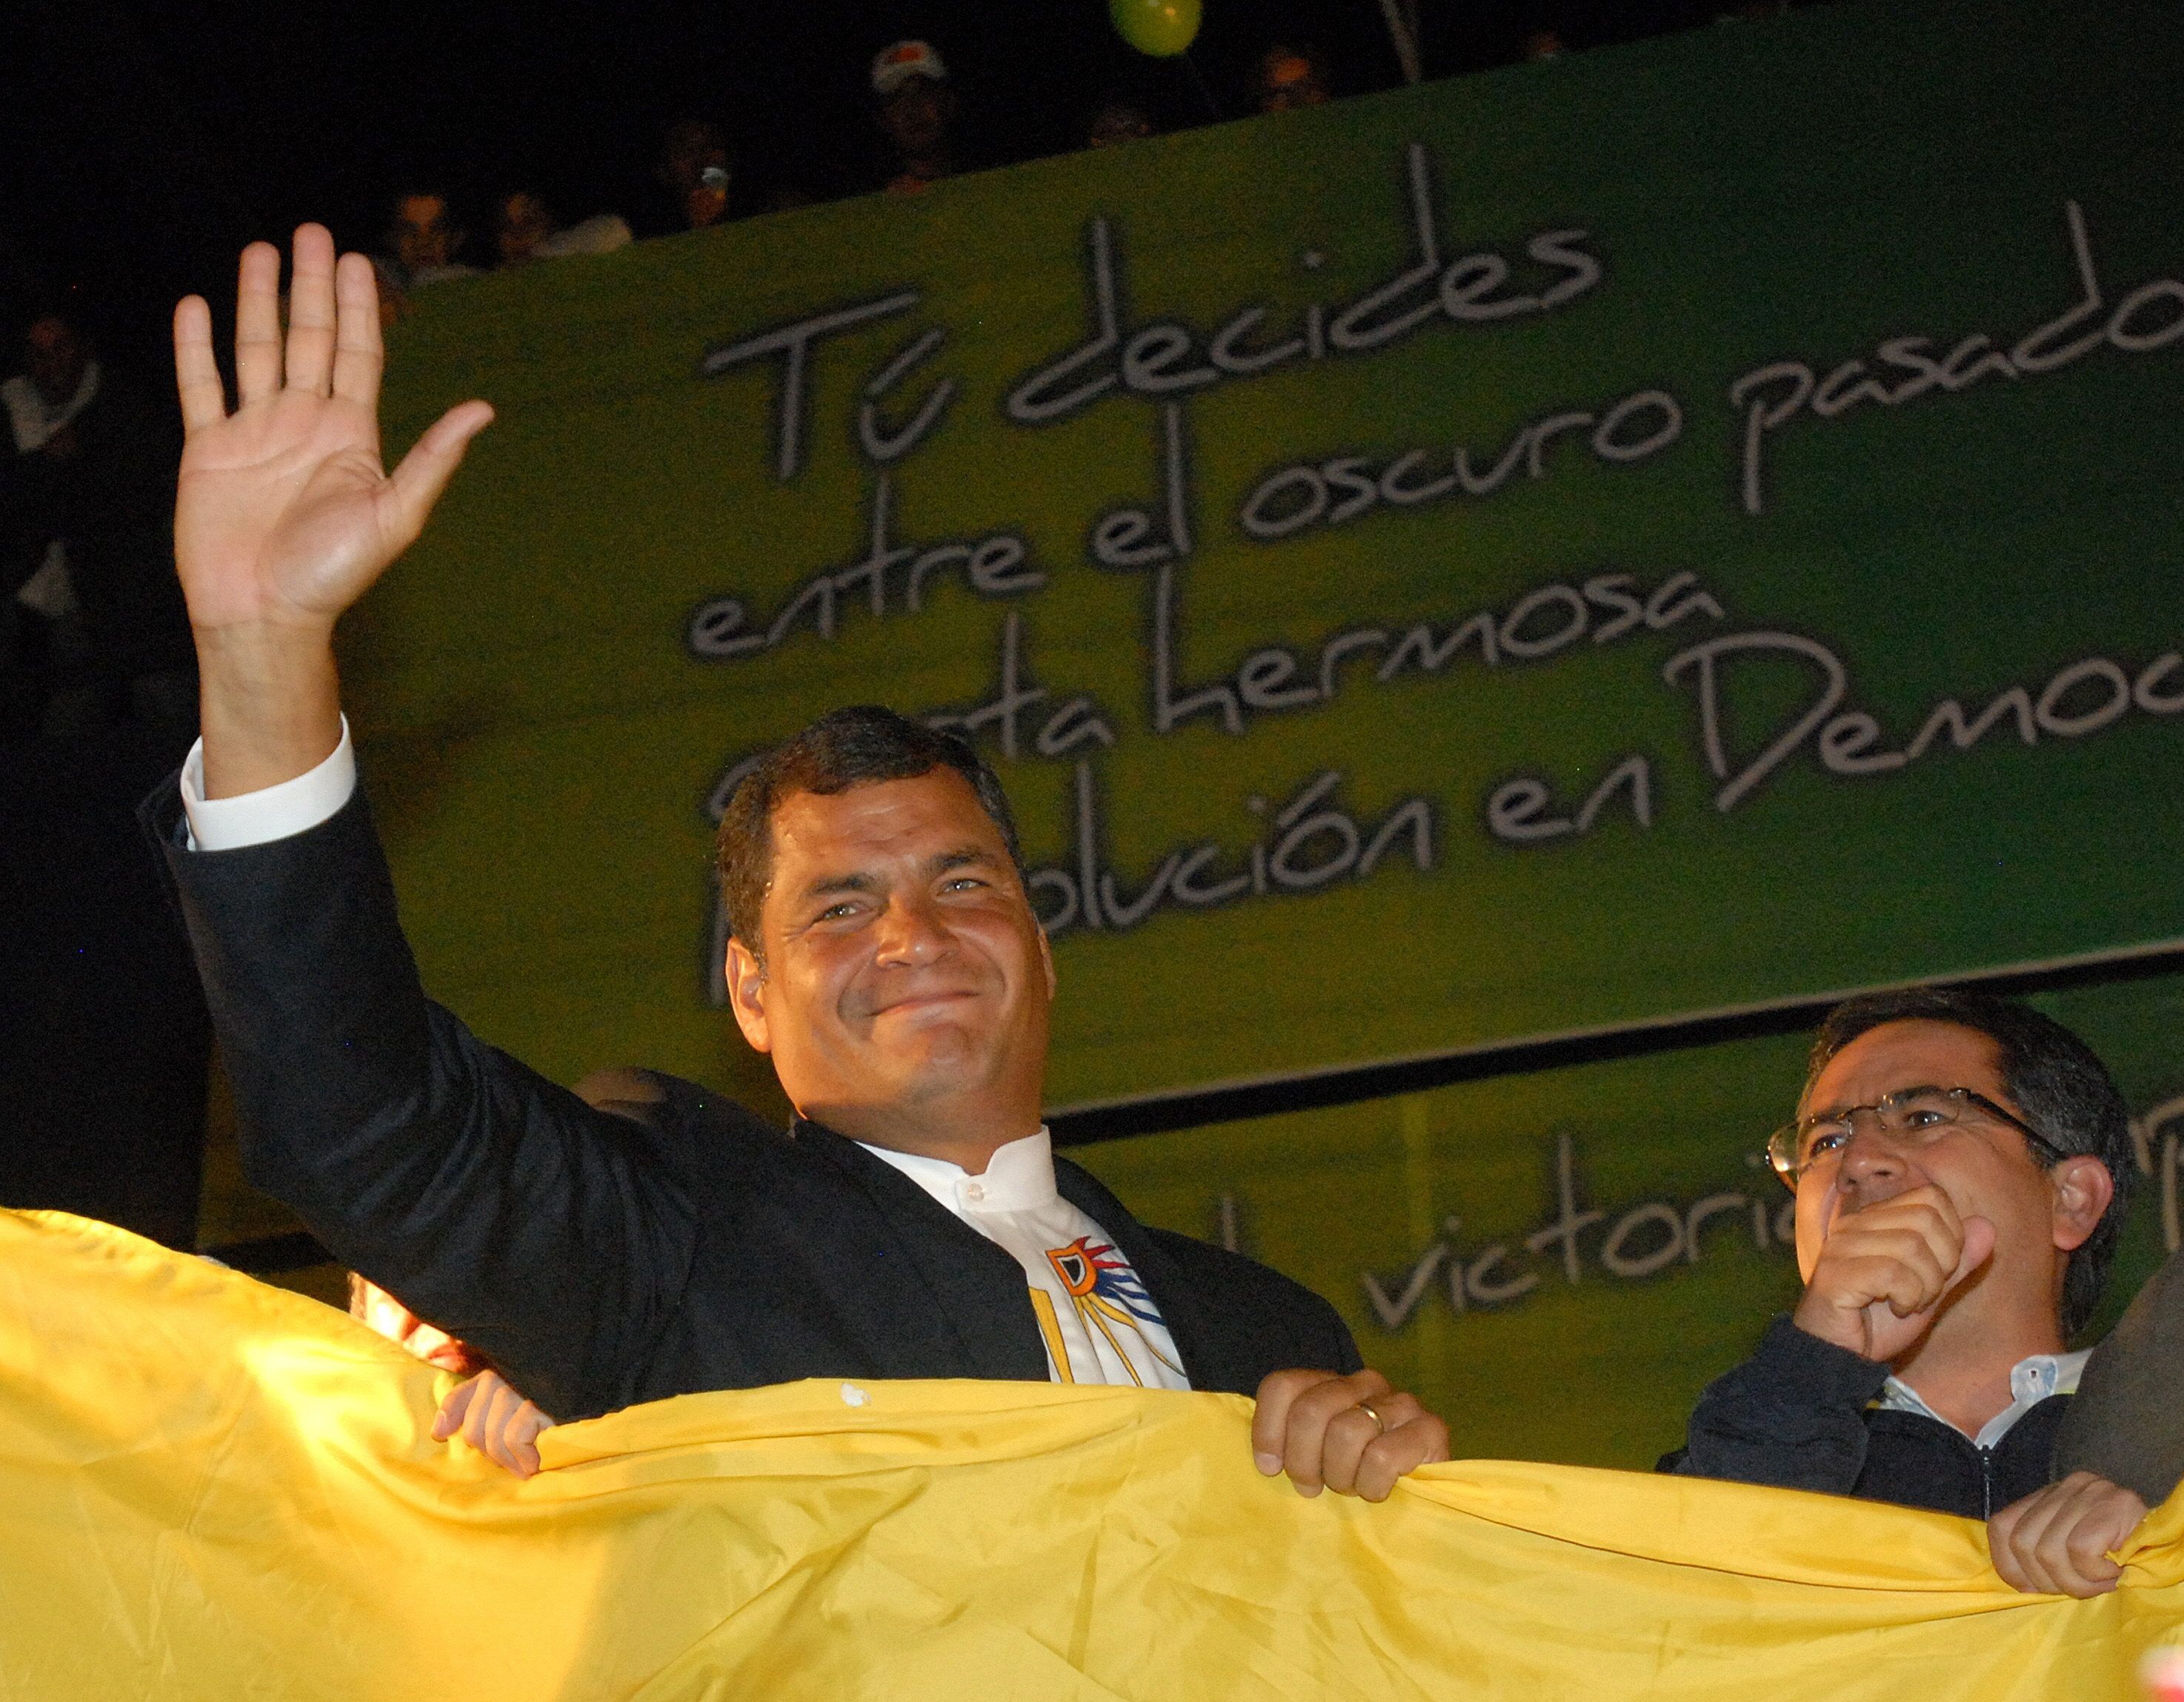 El juicio contra Rafael Correa se encuentra suspendido hasta que sea detenido o se entregue voluntariamente a la justicia ecuatoriana, ya que no puede ser juzgado en ausencia.